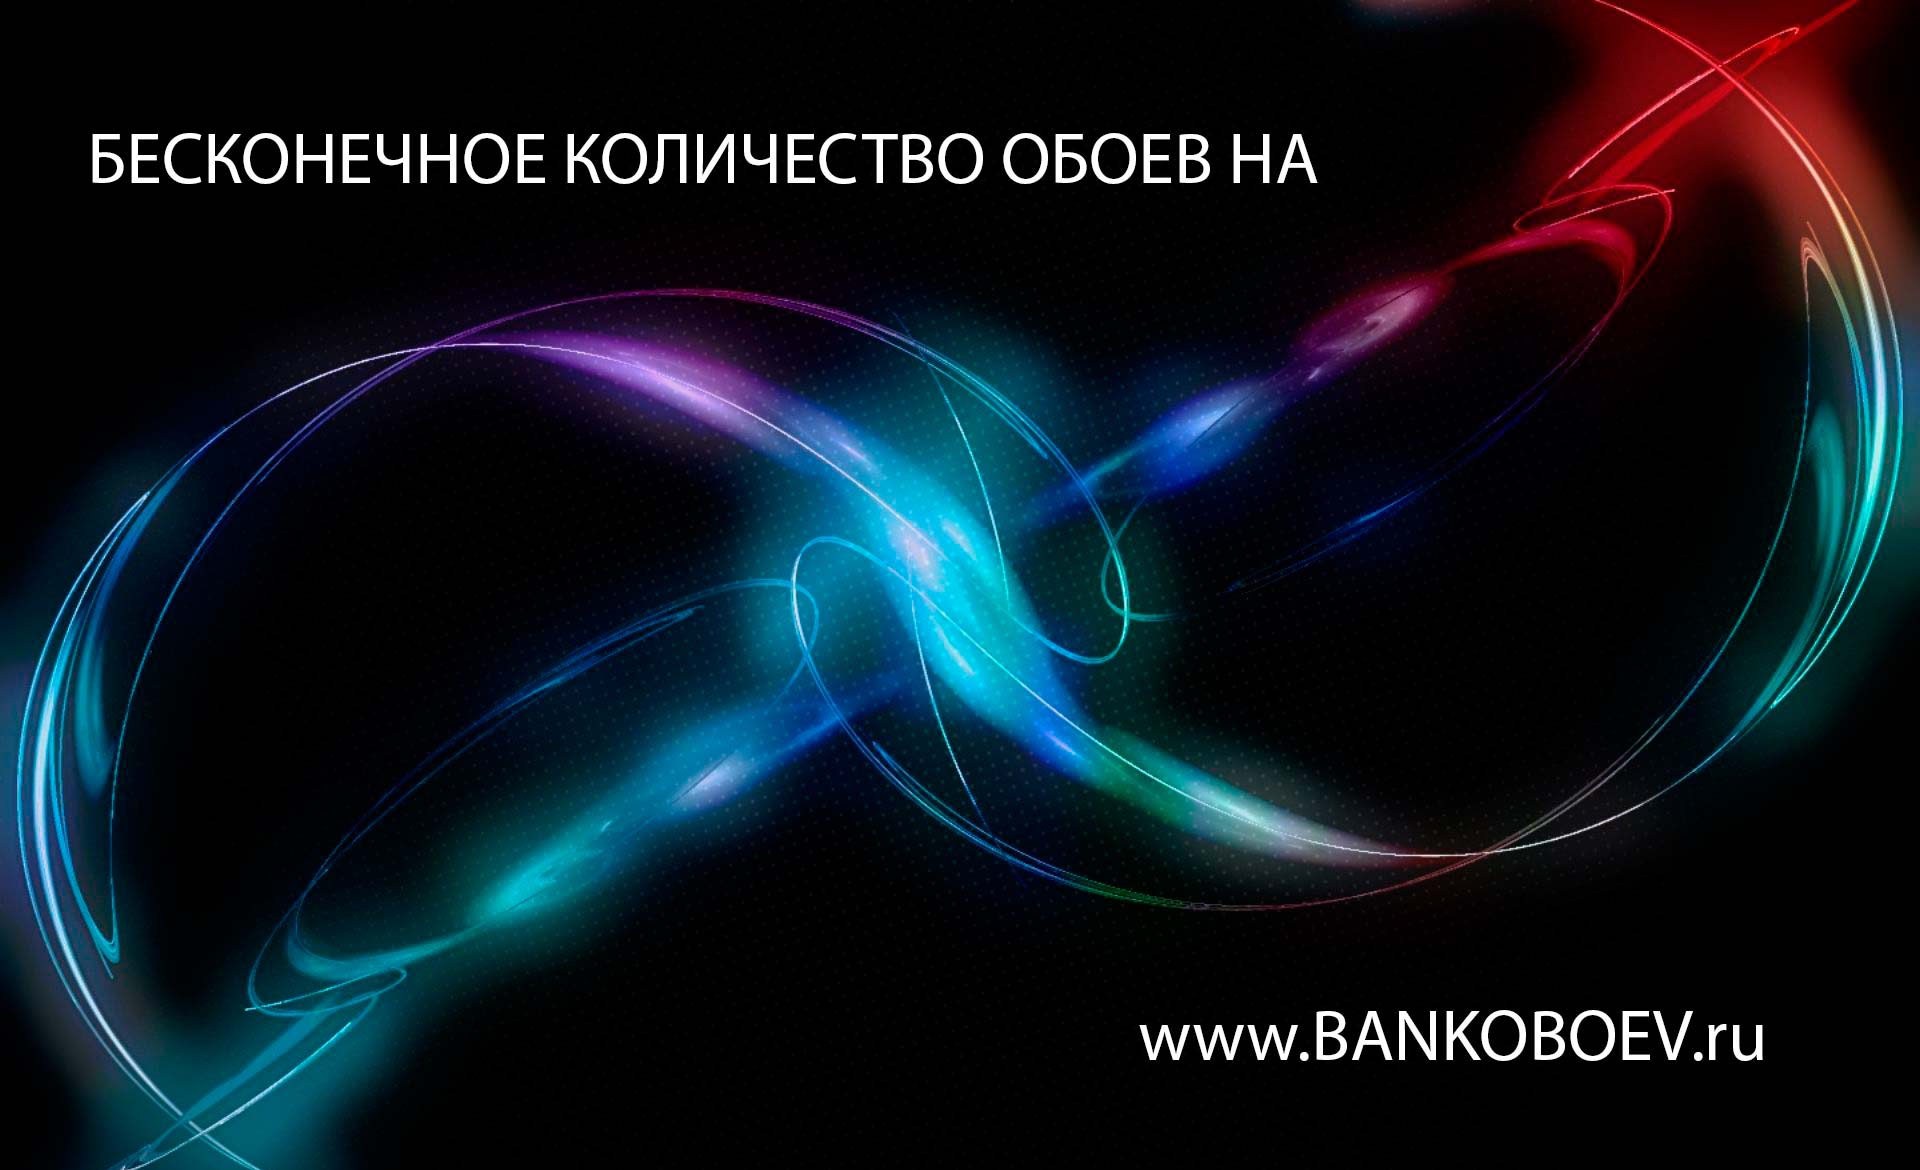 Bankoboev Ru Image Mjgwmdgw Jpg